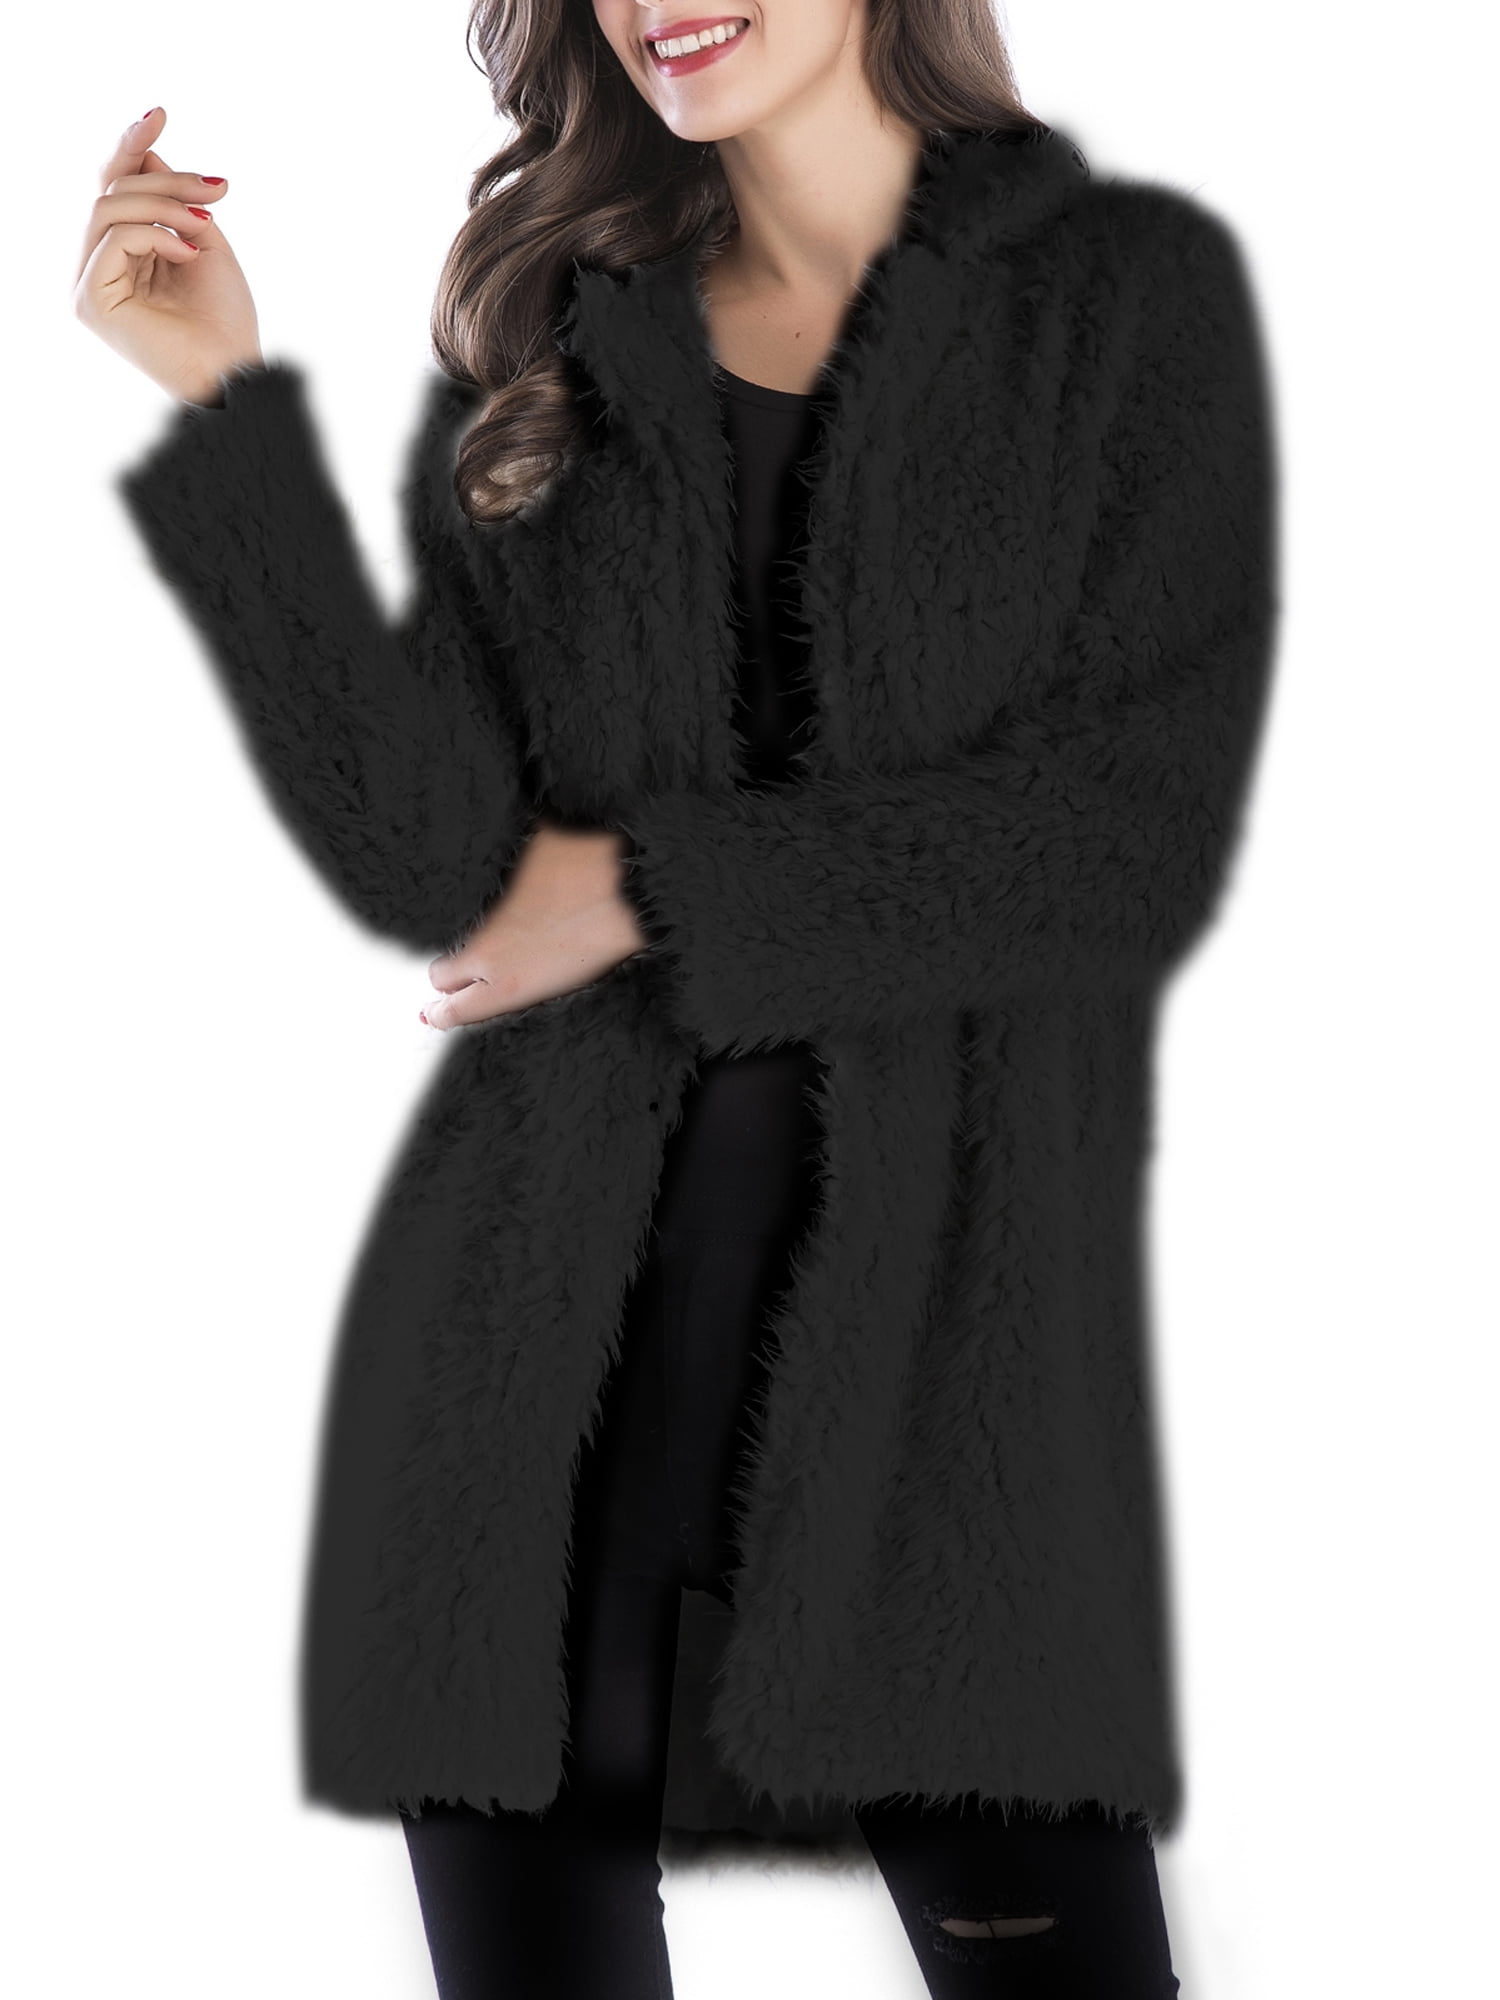 I613 Women’s Fuzzy Lapel Sweater Winter Long Sleeve Faux Shearling Shaggy Pullover Oblique Zip Up Sweatshirt Outwear 